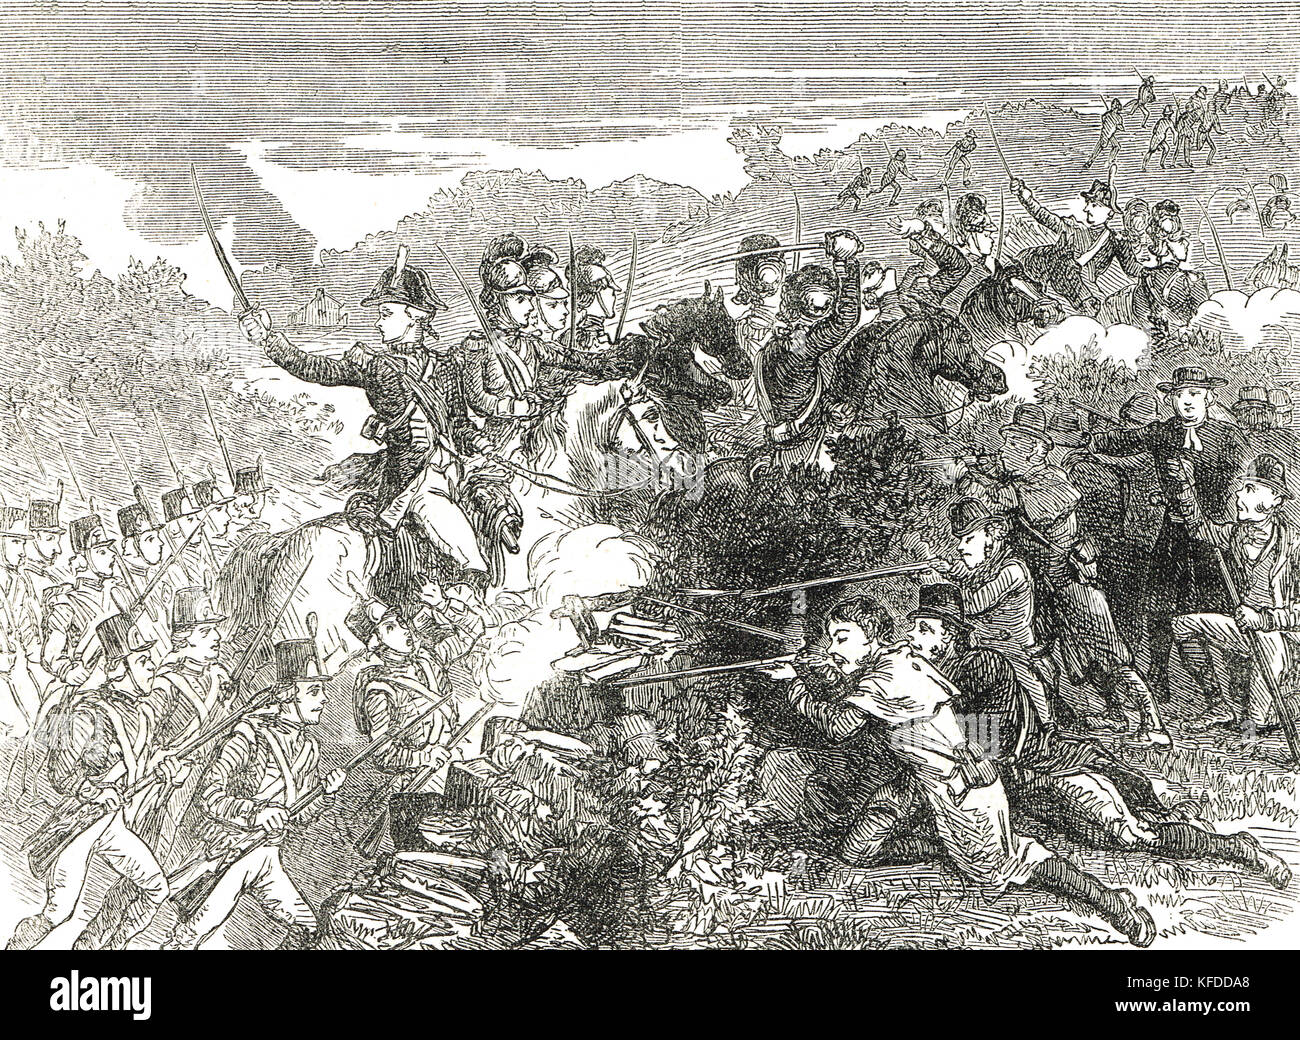 Angriff der britischen Armee auf die Wexford-Rebellen, 1798, irische Rebellion von 1798 Stockfoto